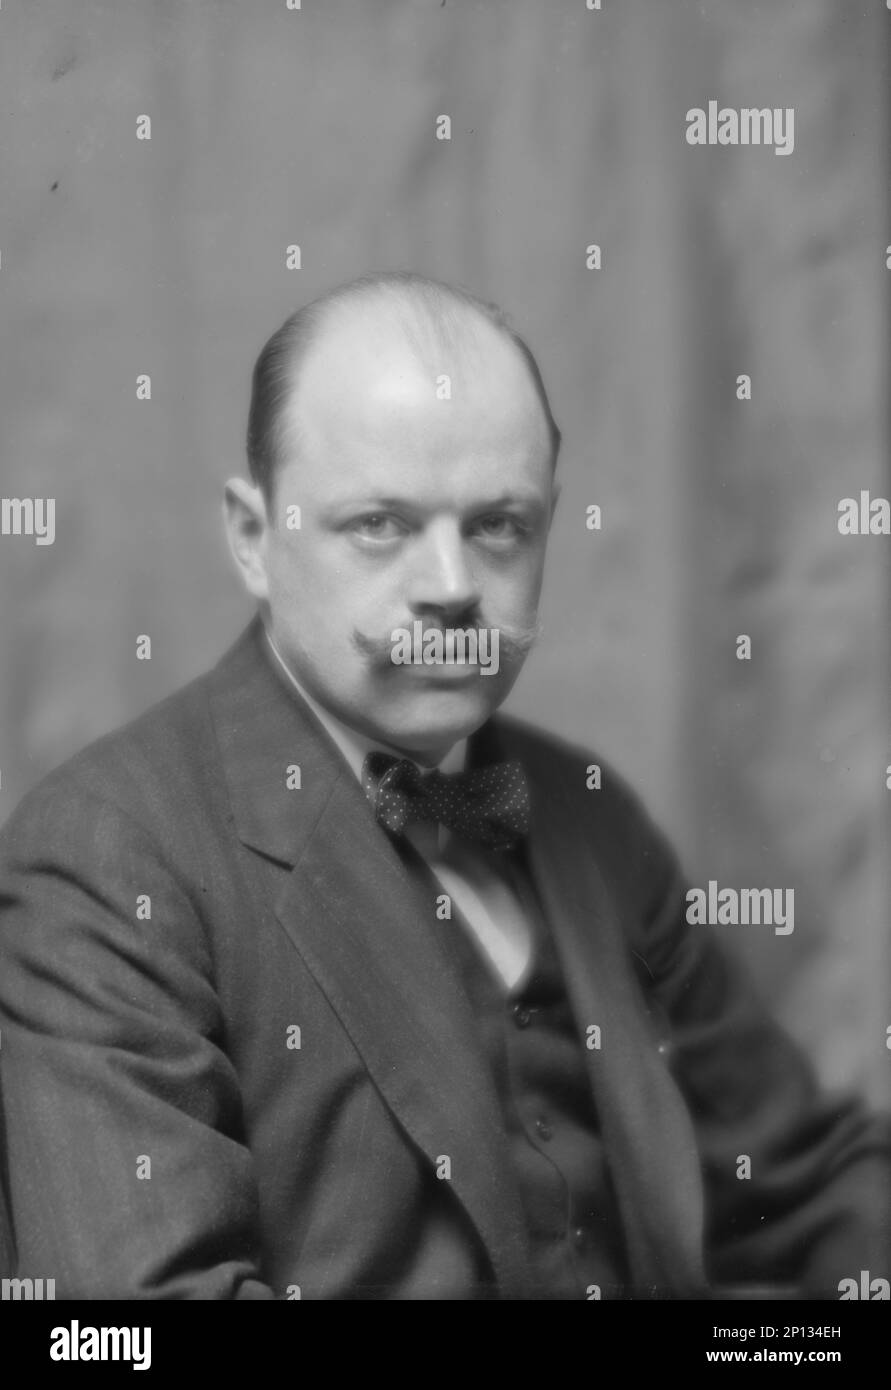 Wilson, Alvah, Mr., portrait photograph, 1912 Apr. 21. Stock Photo